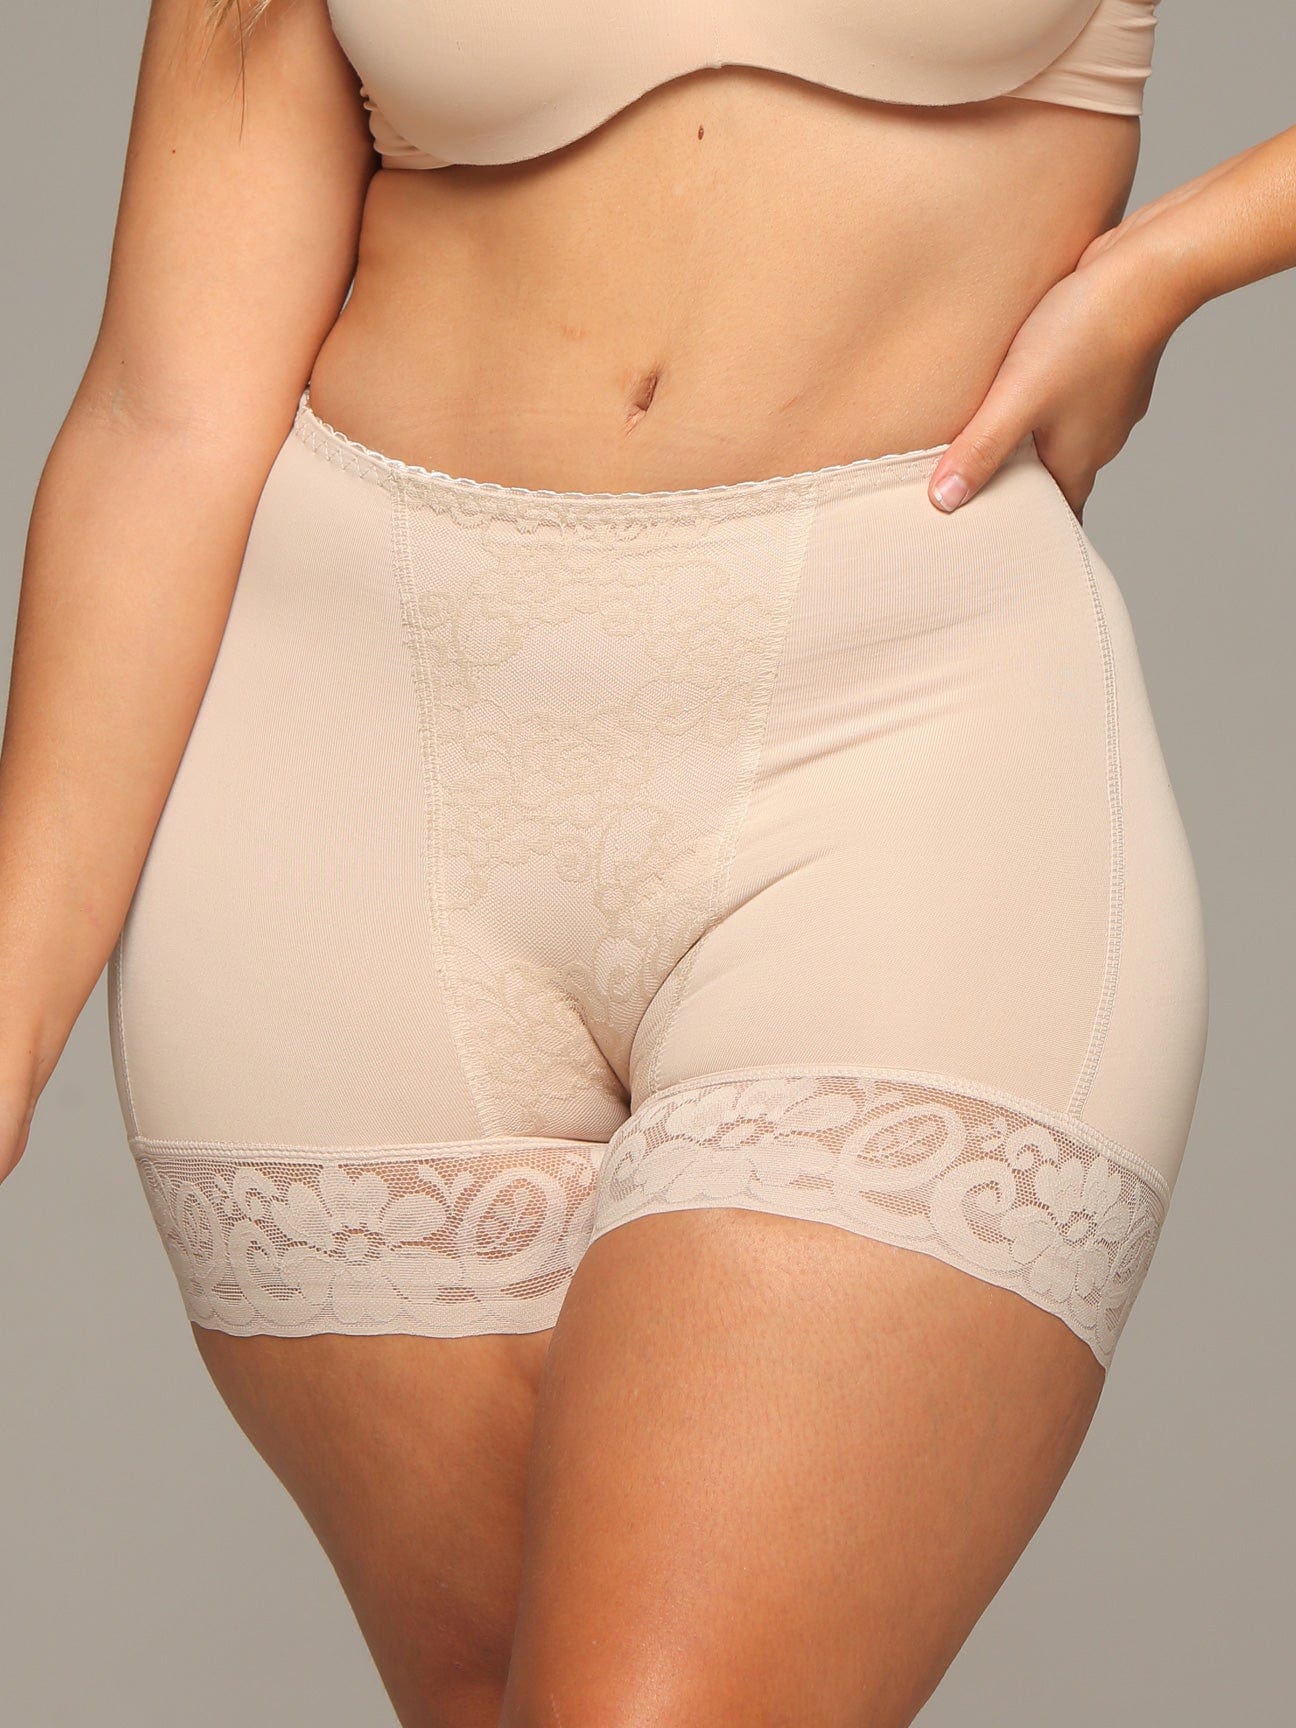 Fajas Colombianas Fajate&Short Levanta Cola Gluteos Butt-lifter Shaper Panty  High Waist Short Butt Lifter's Panties